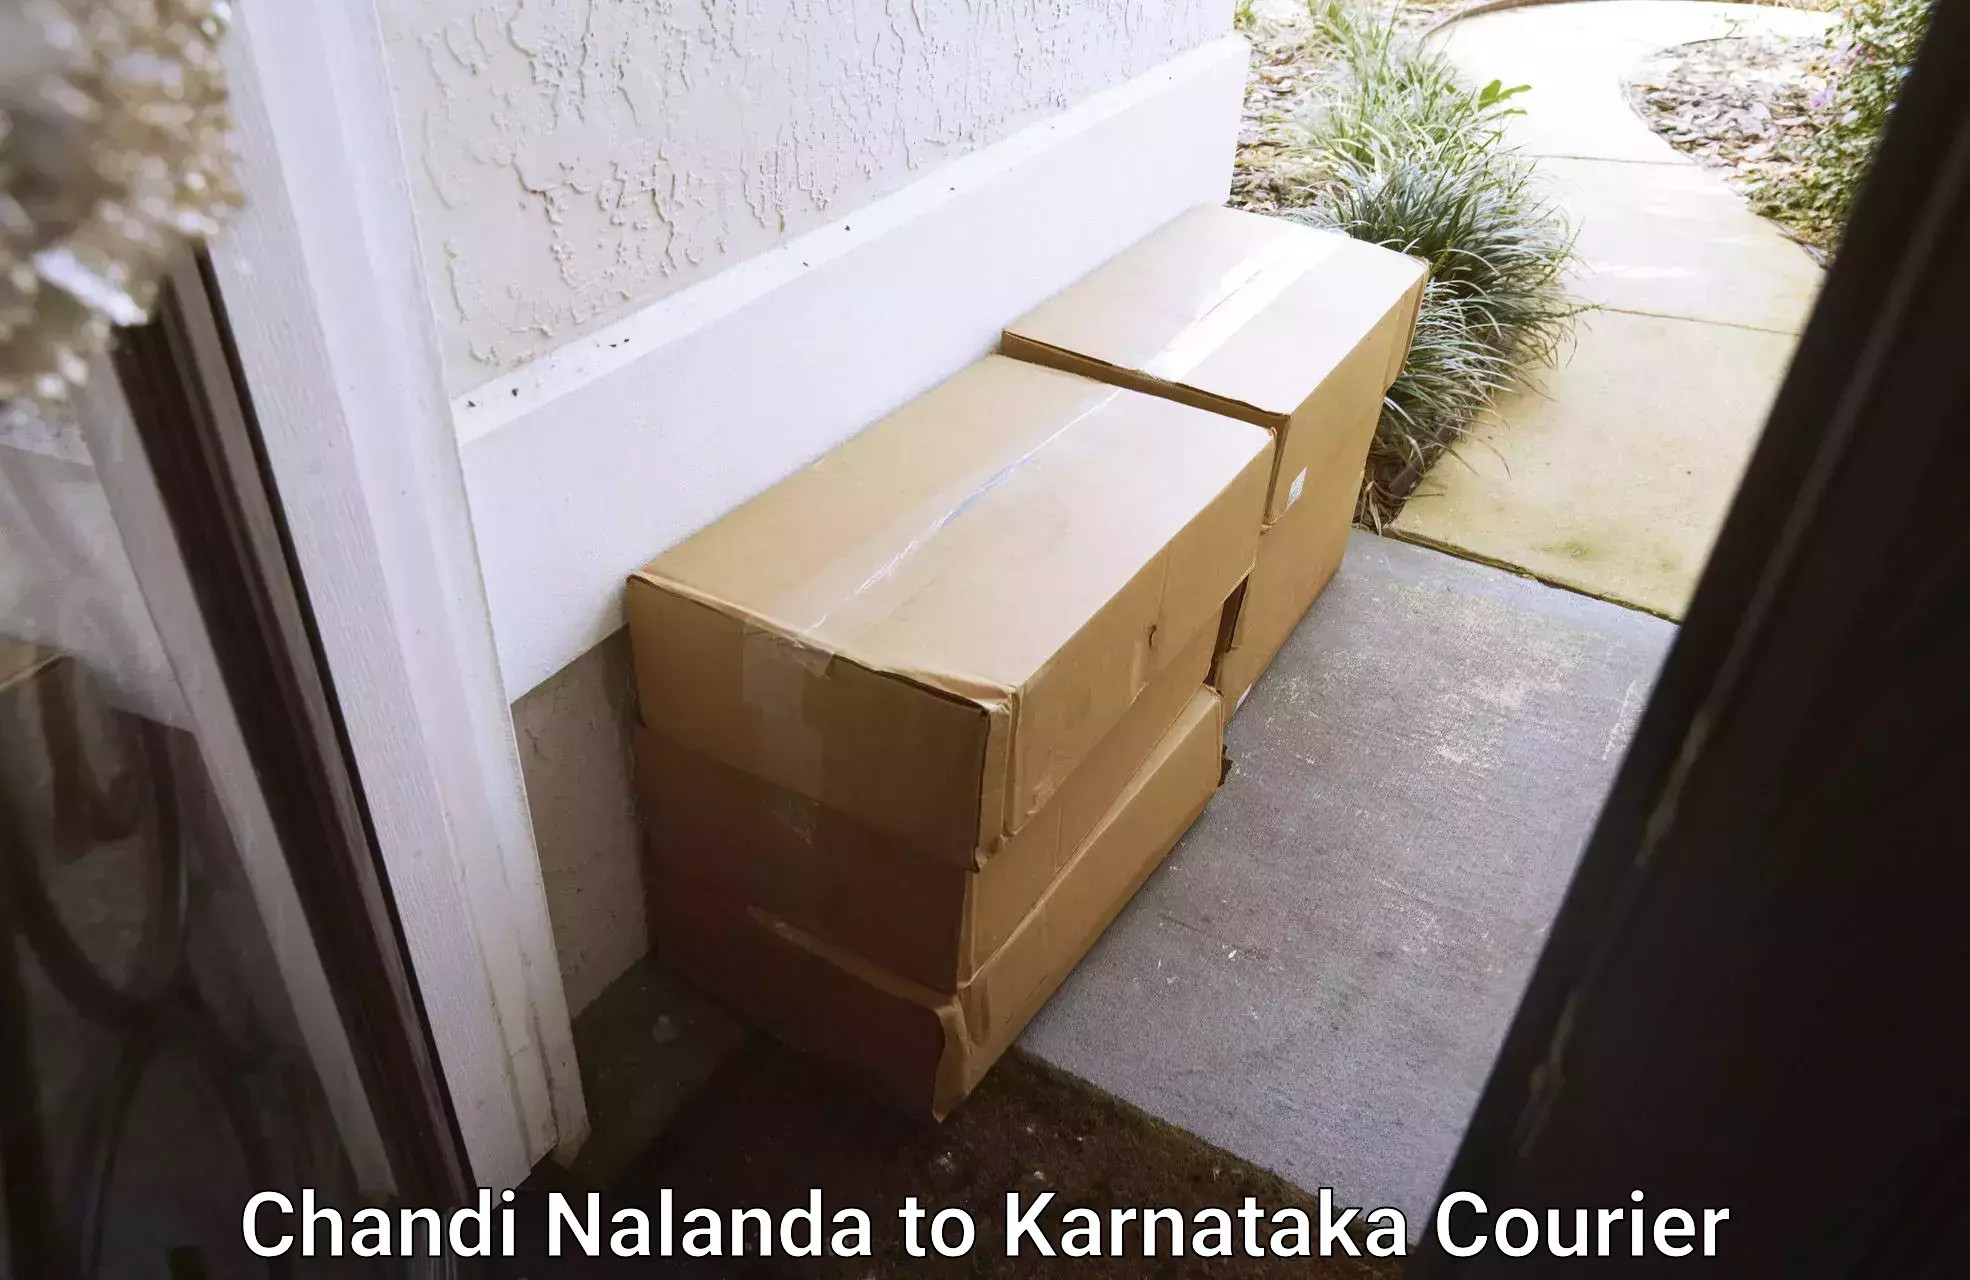 Trusted moving company Chandi Nalanda to Hunsur